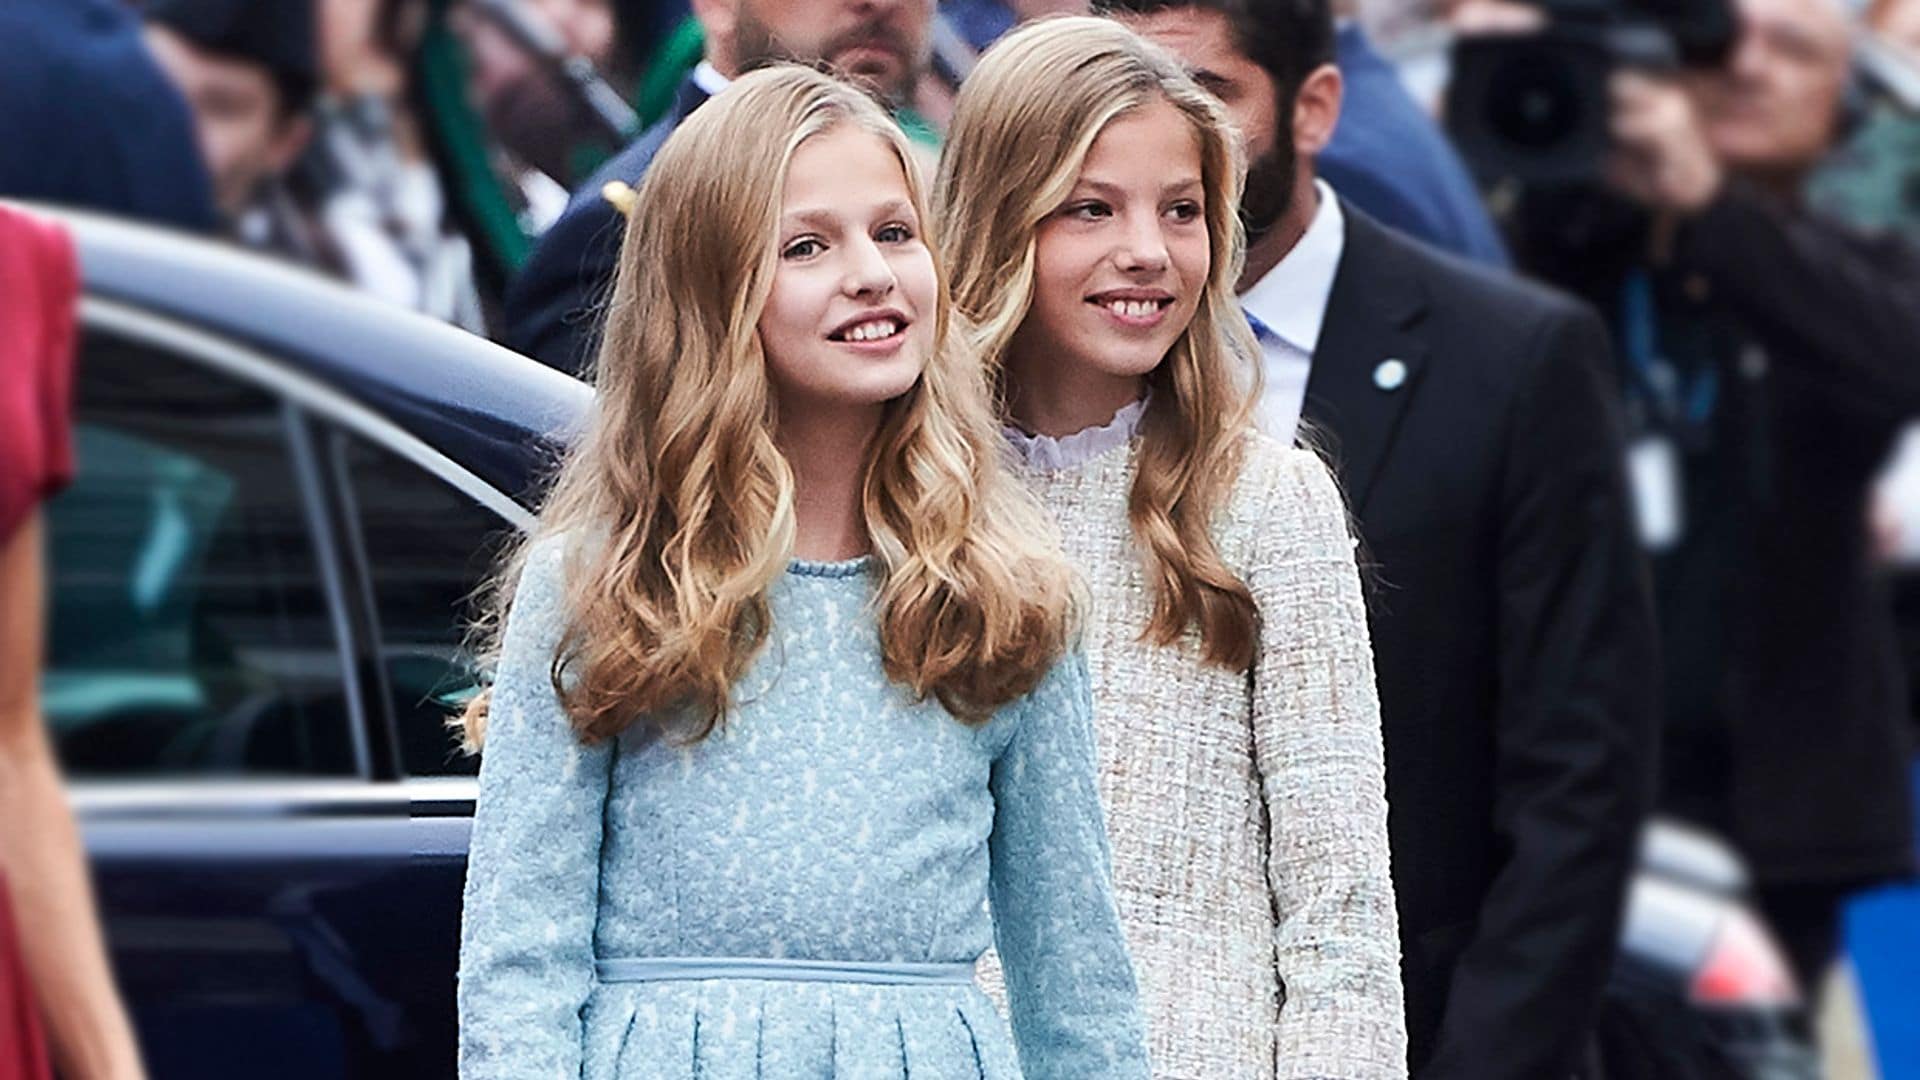 La princesa Leonor y la infanta Sofía reaparecerán durante la crisis con motivo del Día del Libro